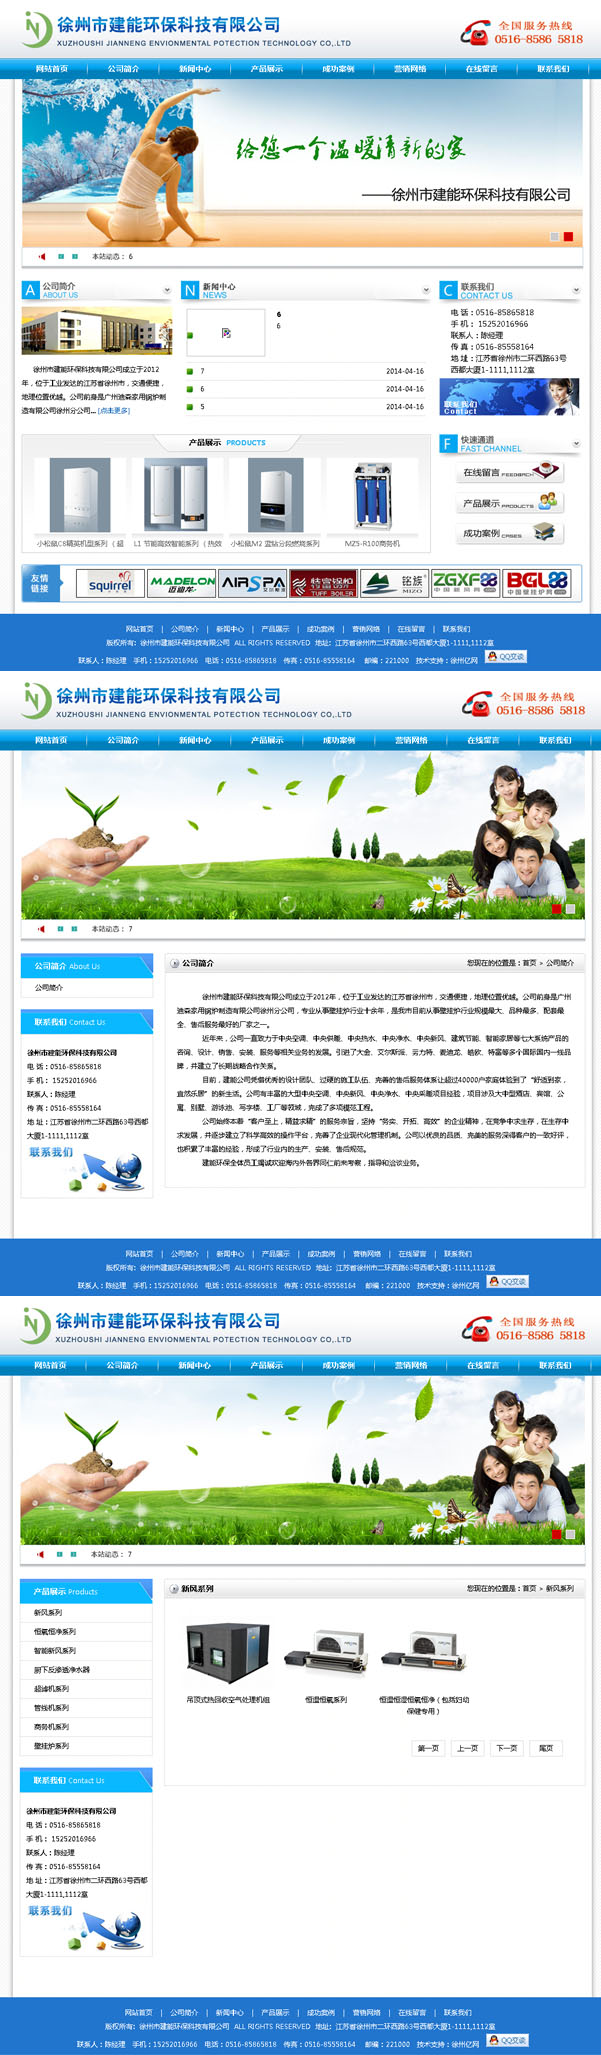 徐州市建能环保科技有限公司